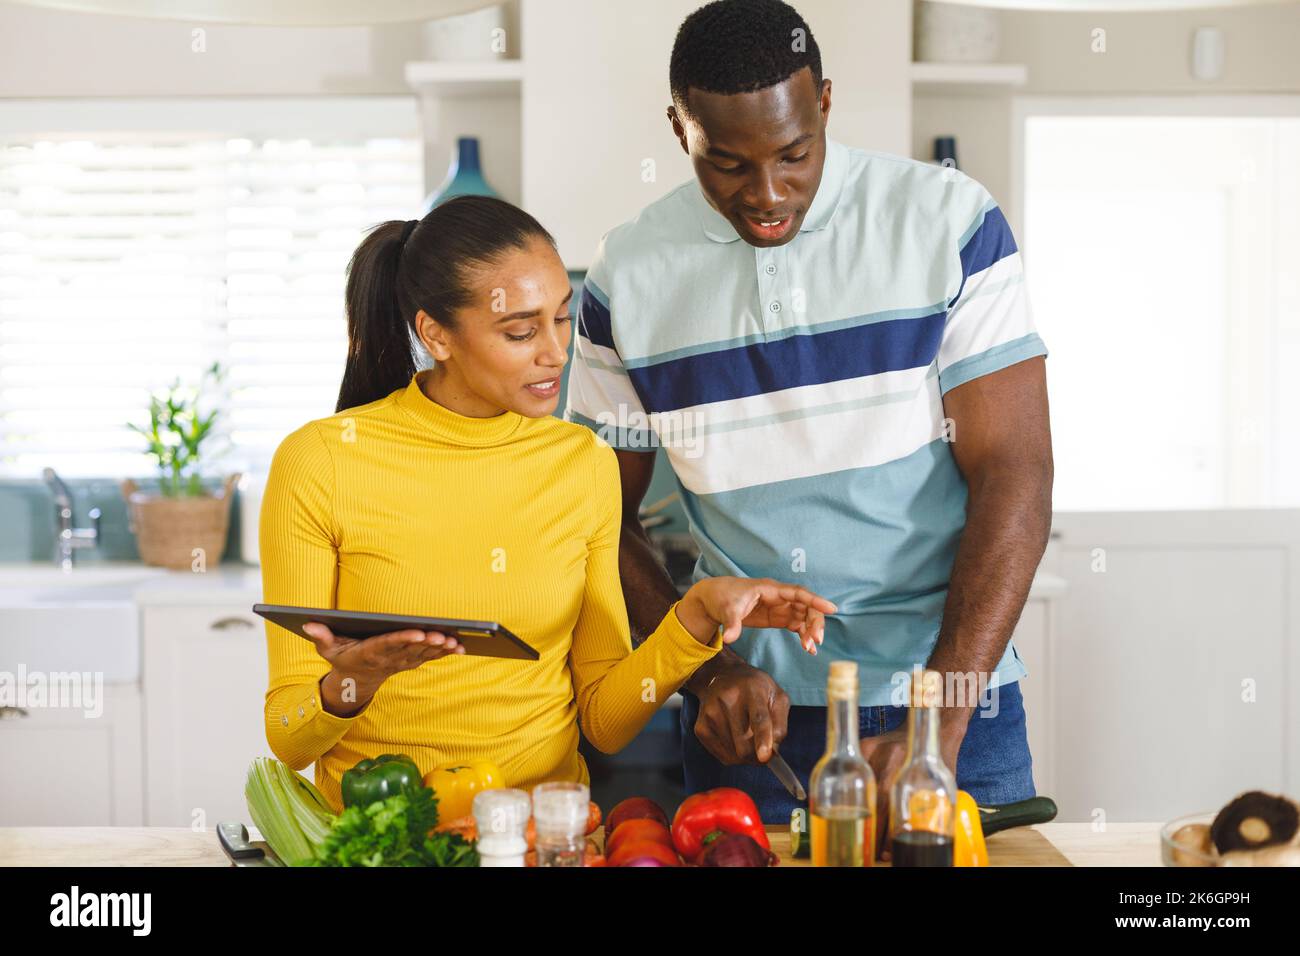 Glückliches, vielseitiges Paar, das das Rezept auf einem Tablet verwendet, um gemeinsam in der Küche Essen zuzubereiten Stockfoto